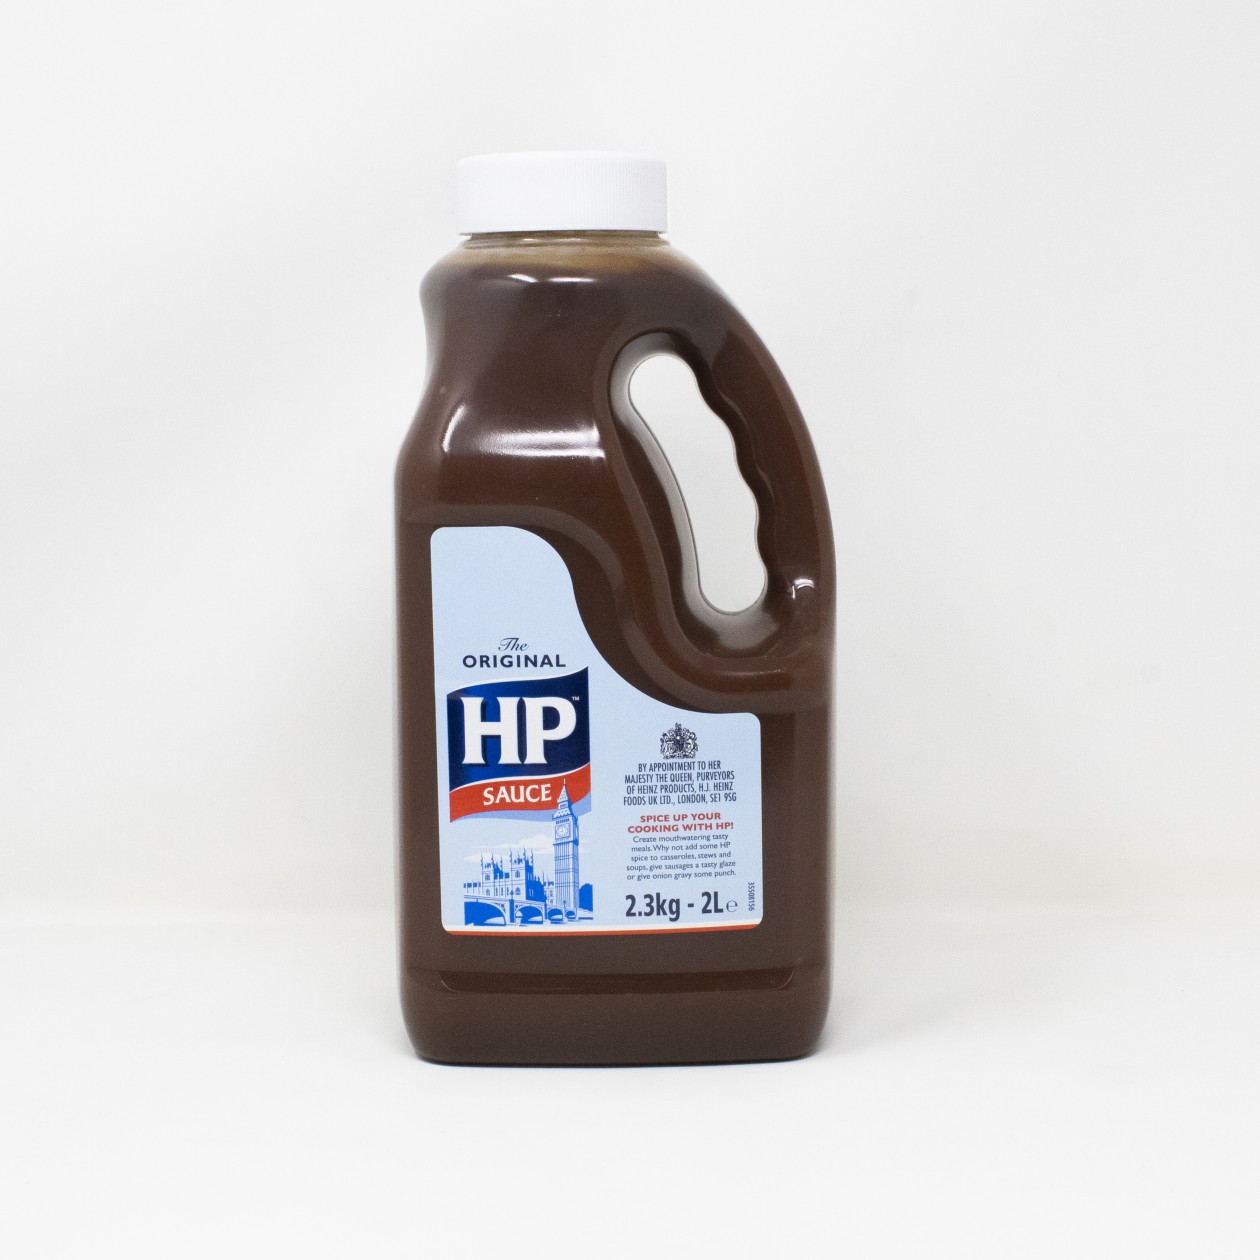 HP Original Sauce 2.3kg